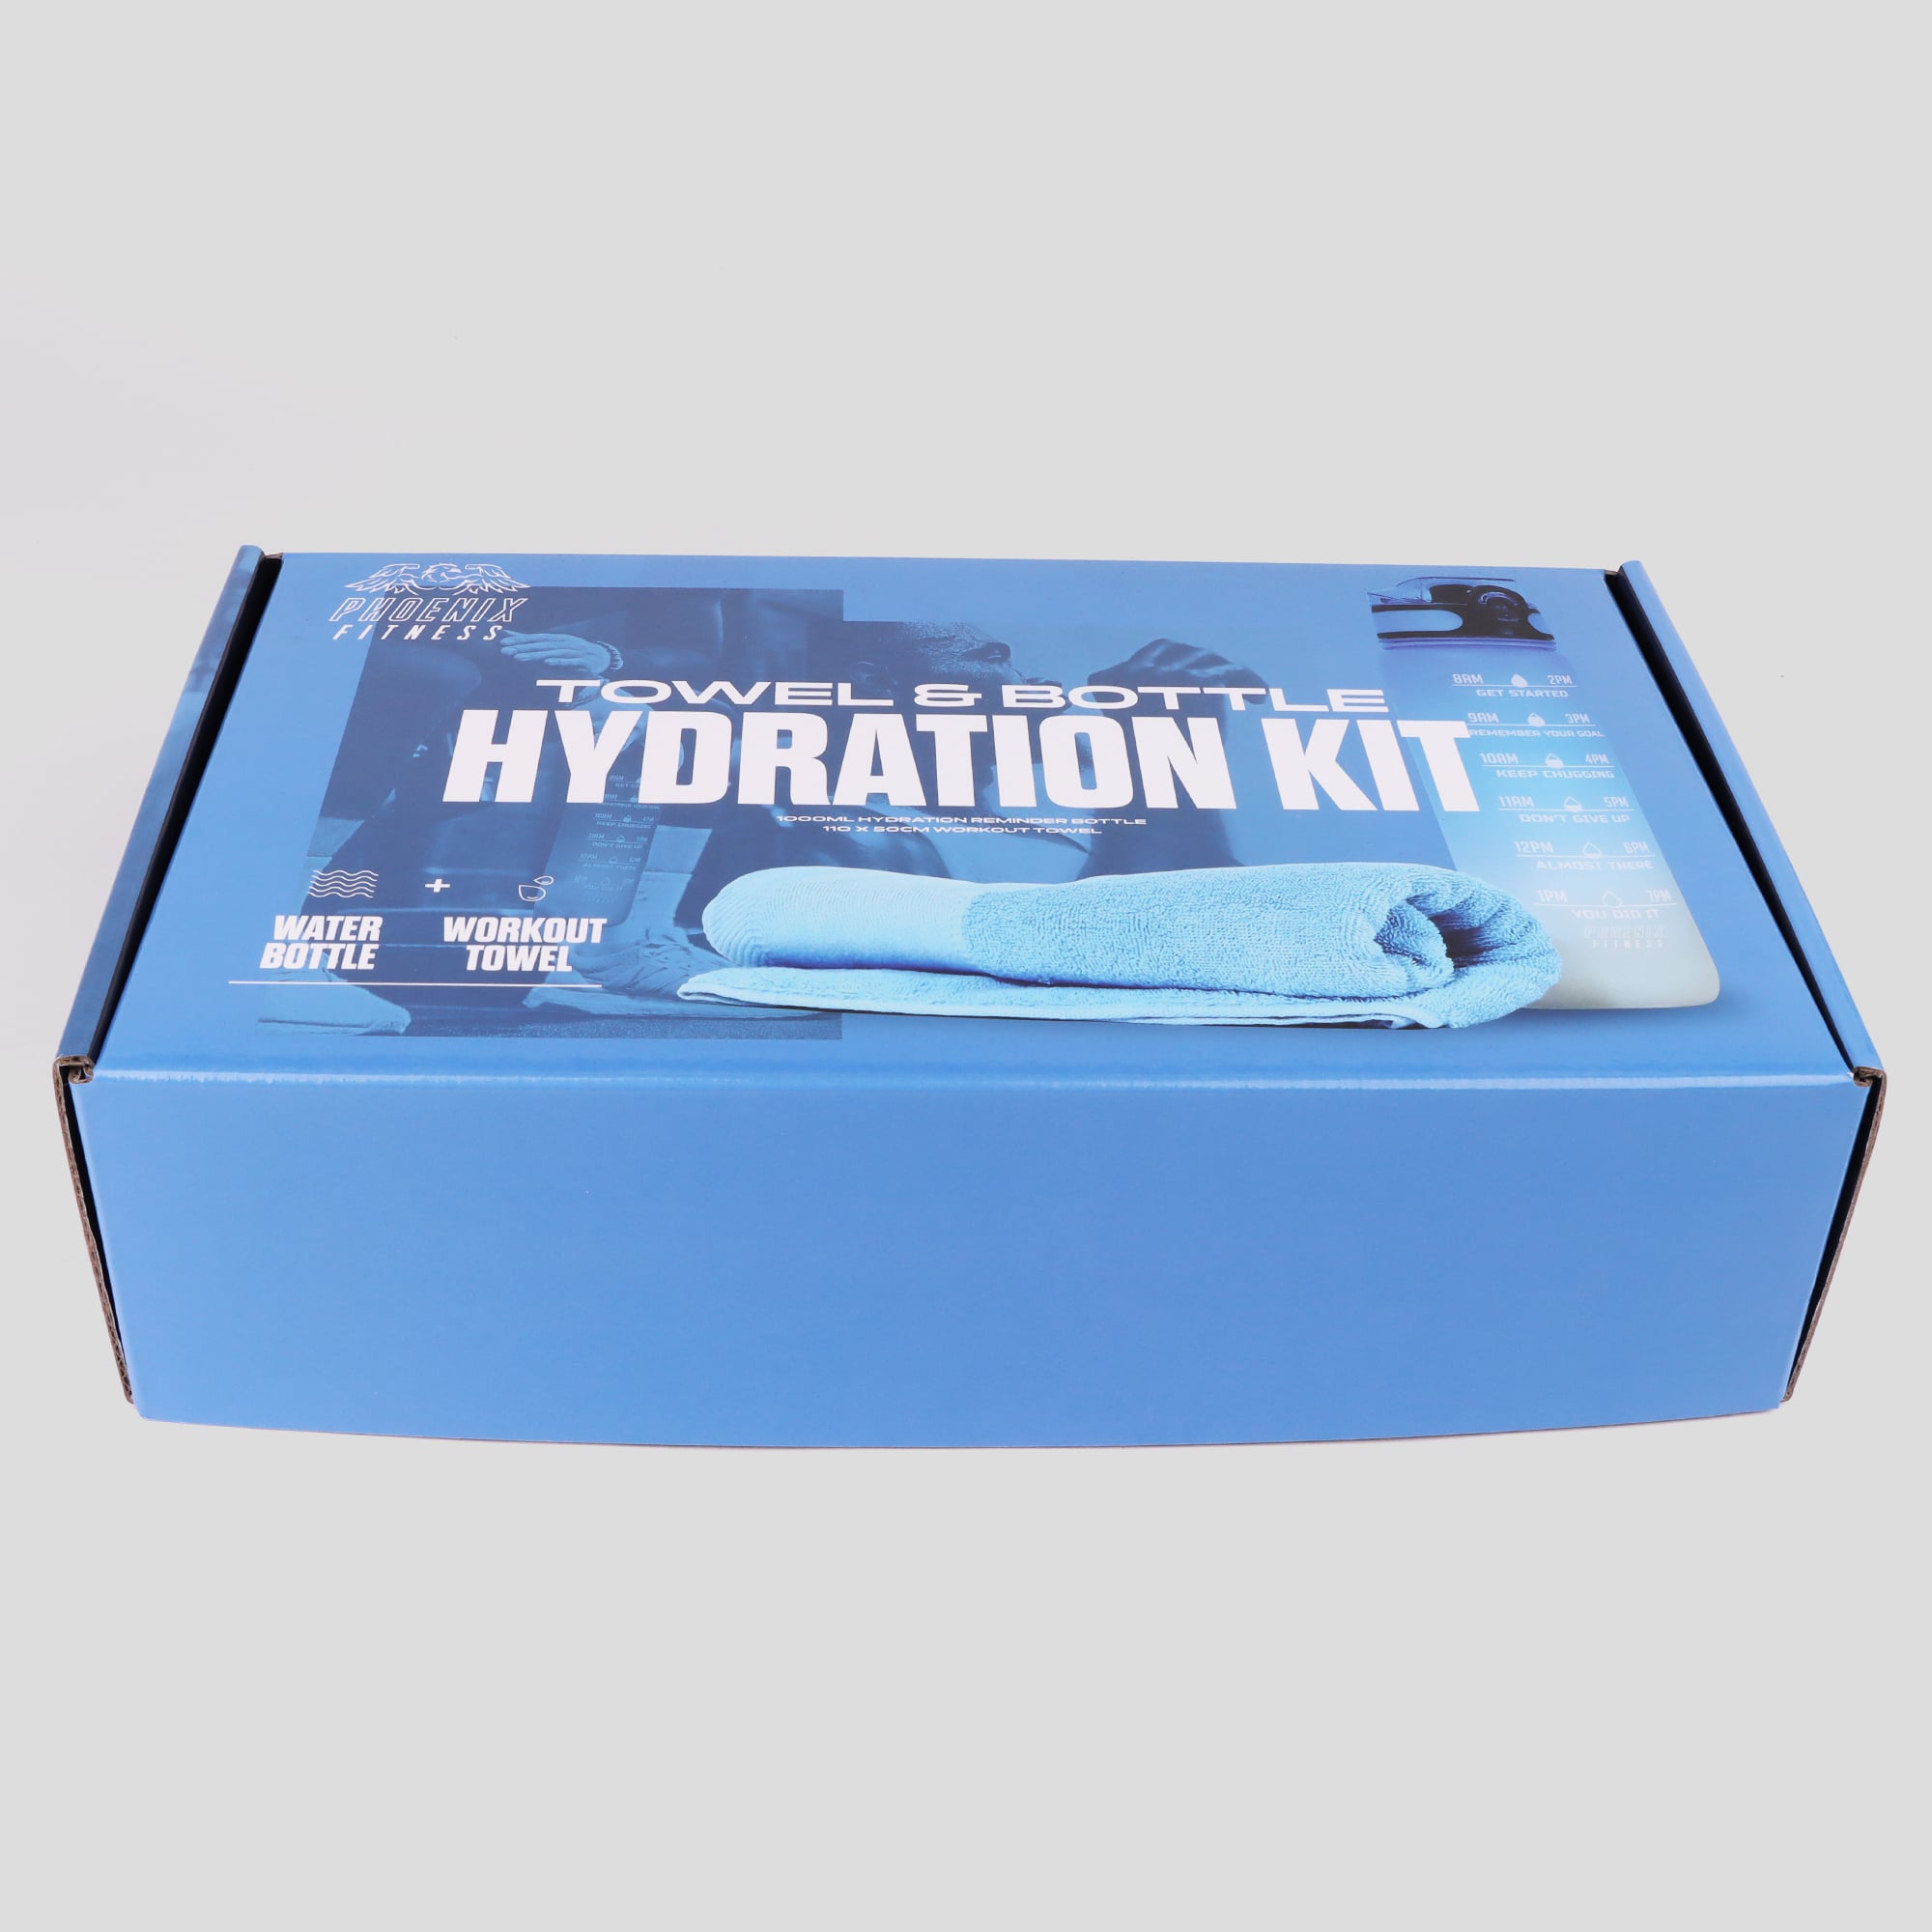 Towel & Bottle Hydration Kit